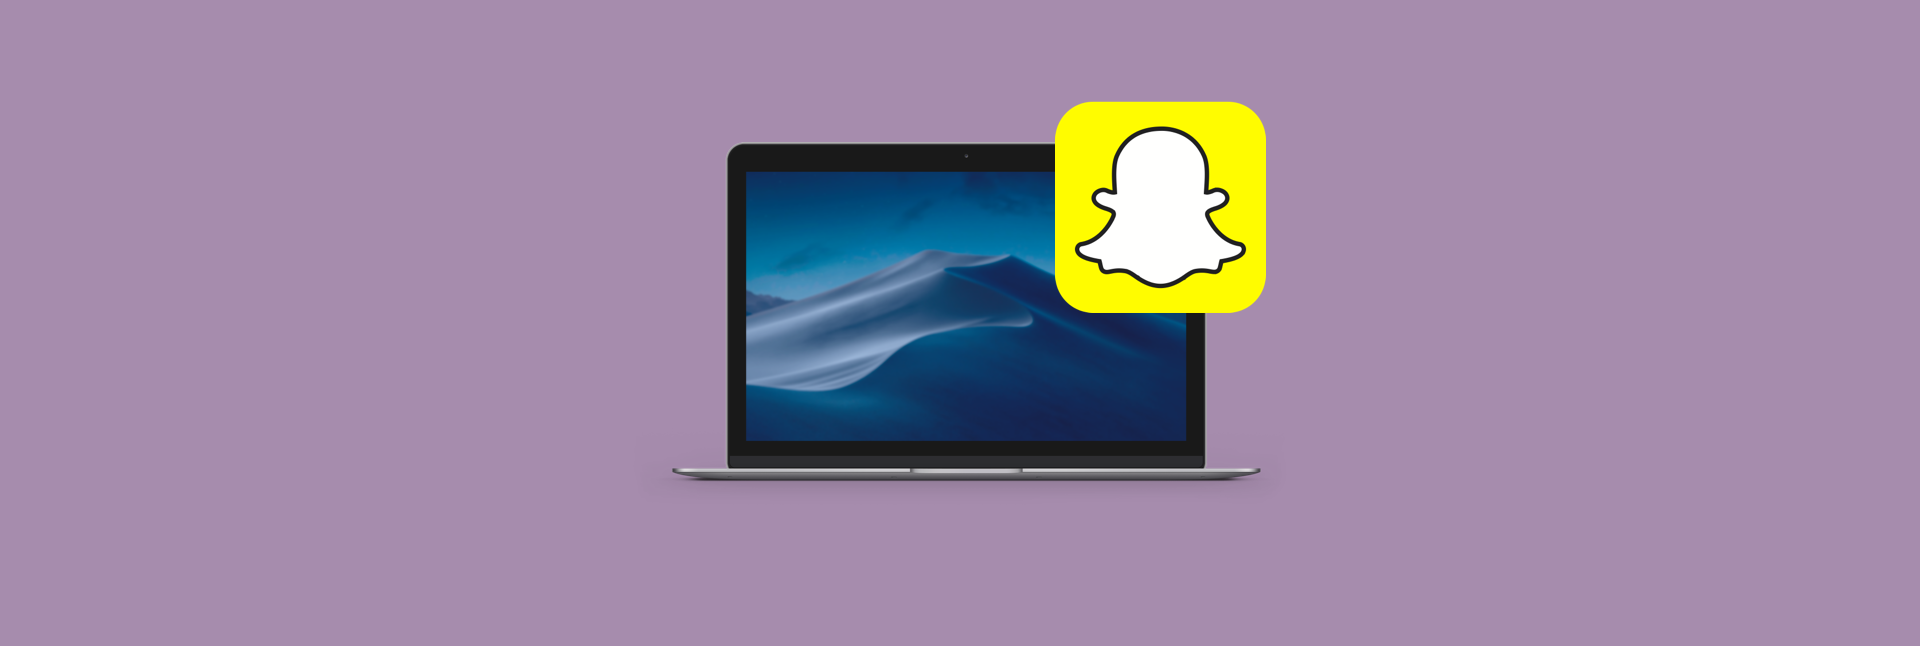 snapchat on mac -bluestacks